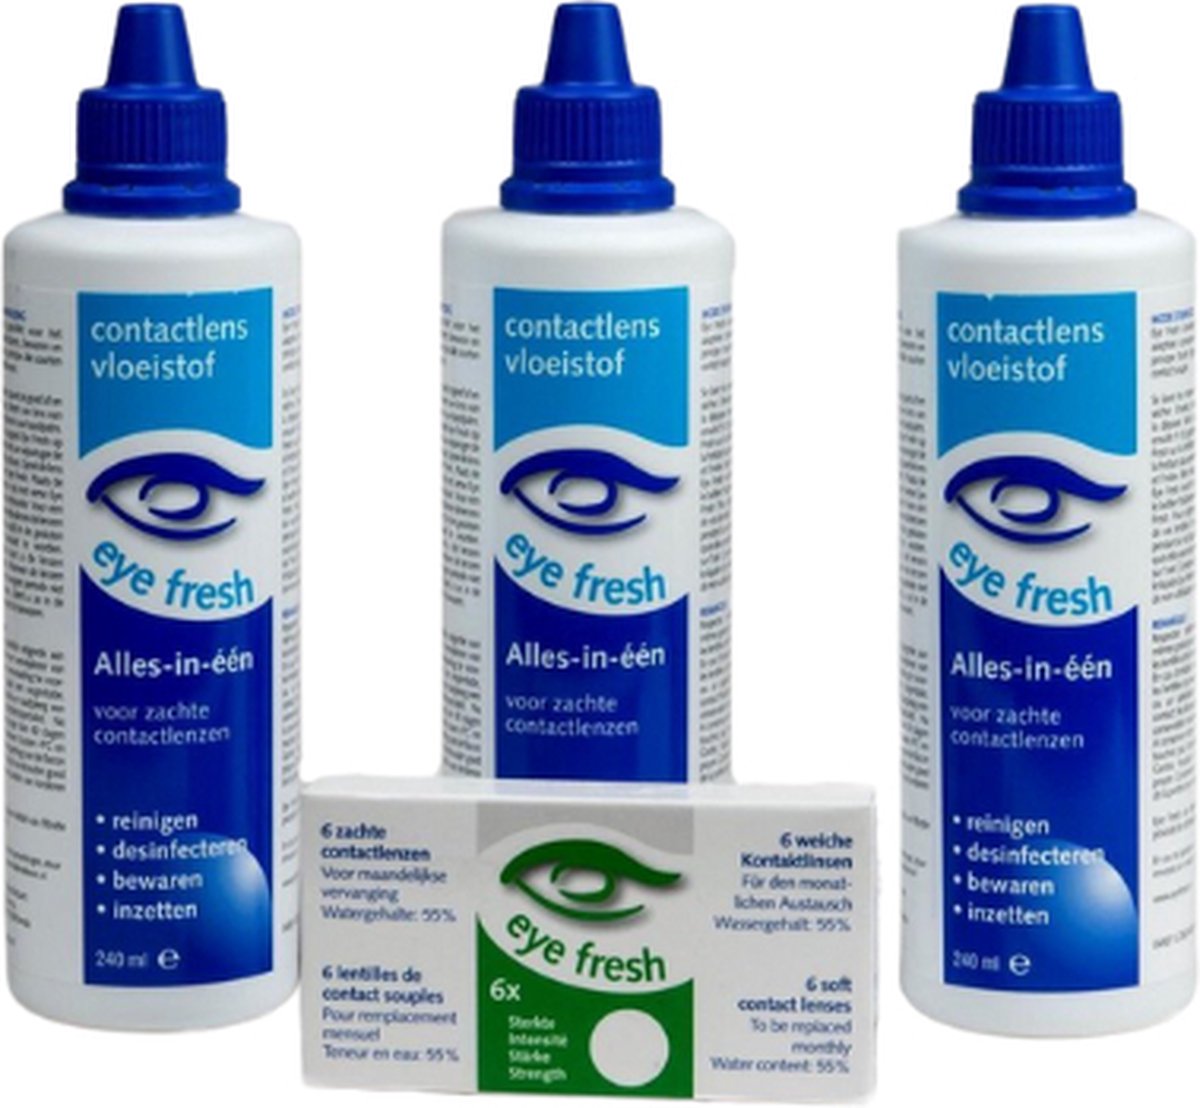 Eye Fresh 3 maanden pakket -4,75 - 6 maandlenzen + 3 flessen lenzenvloeistof - voordeelverpakking